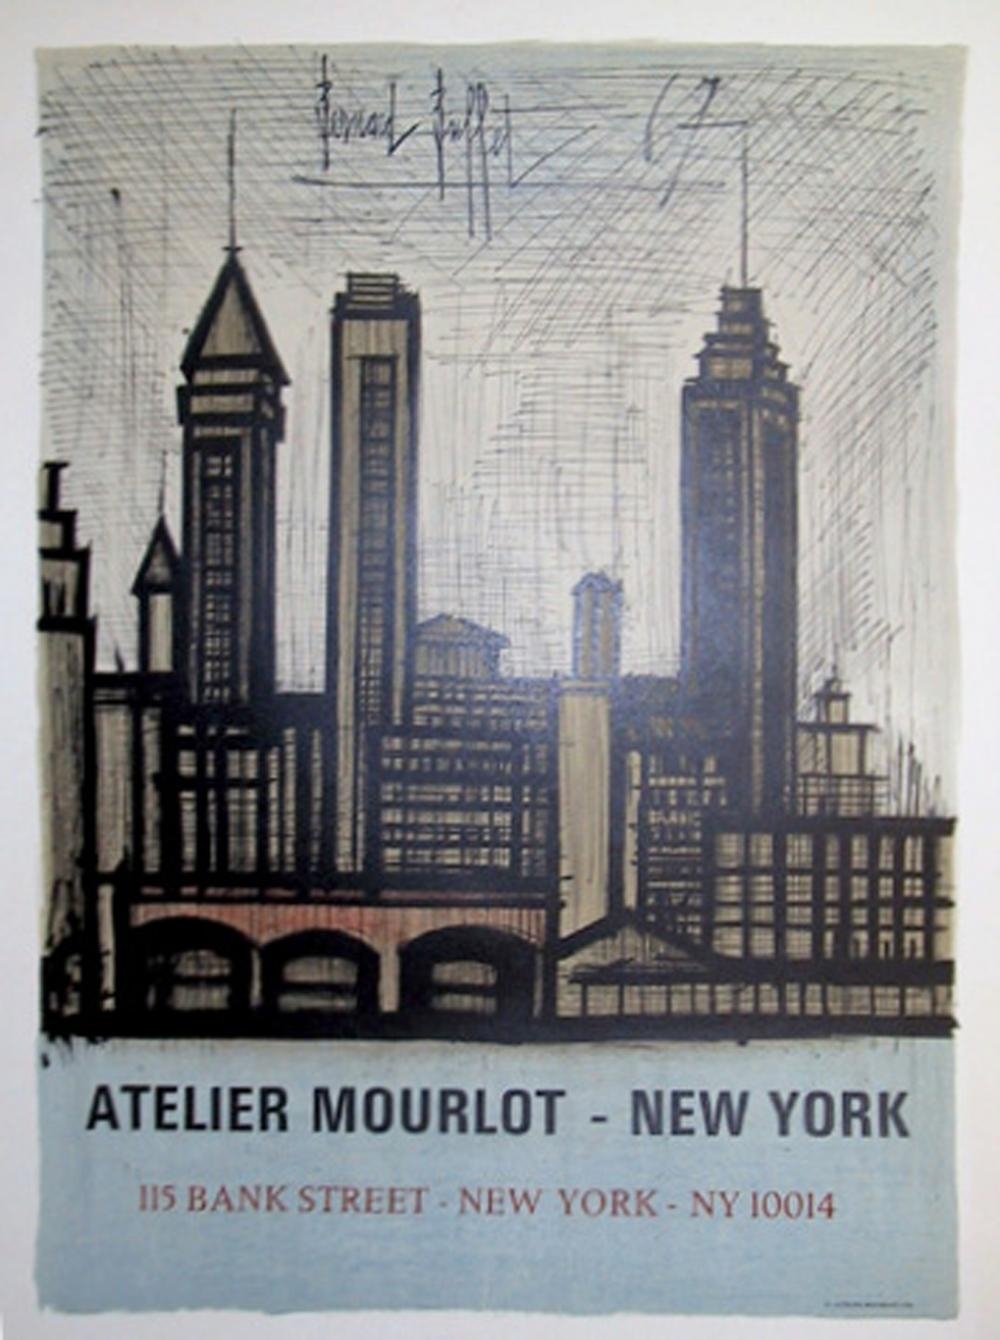 ATELIER MOURLOT - NEW YORK by Bernard Buffet, 1967